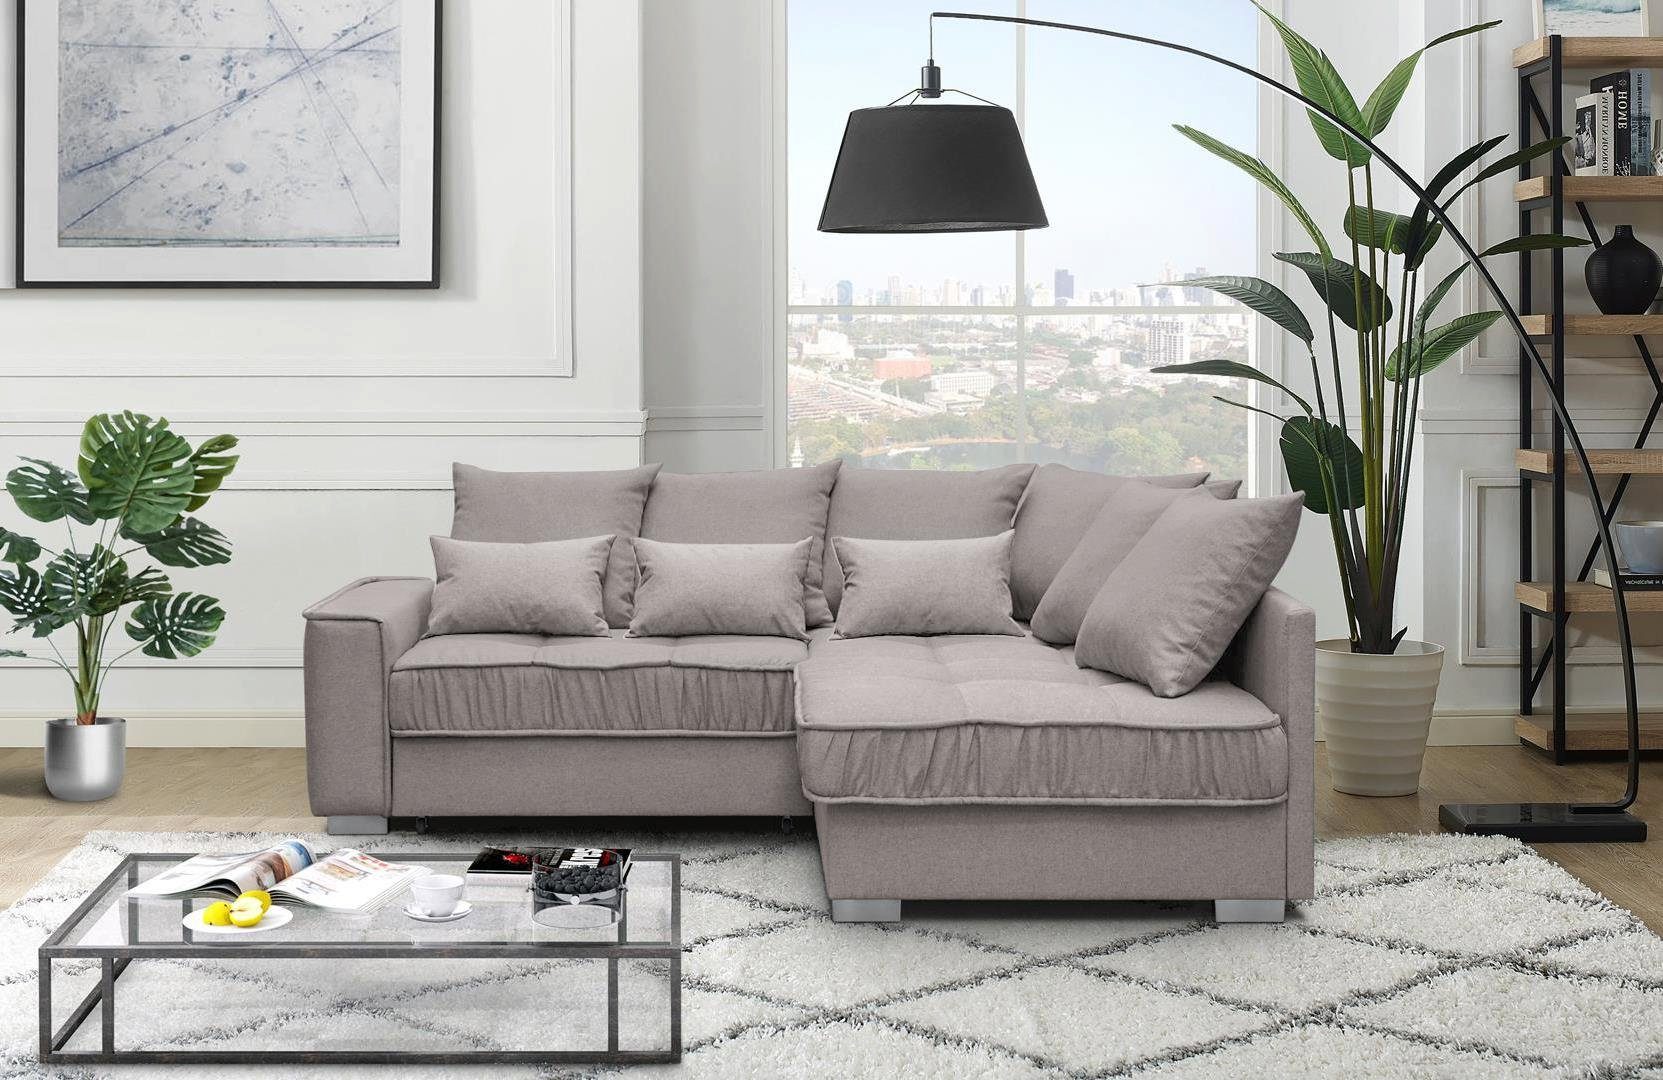 Beautysofa Polsterecke Modern Eckcouch 11 mit Schlaffunktion + Couch Cappucino Sofa rino Ralf und Bettkasten (rino 03)